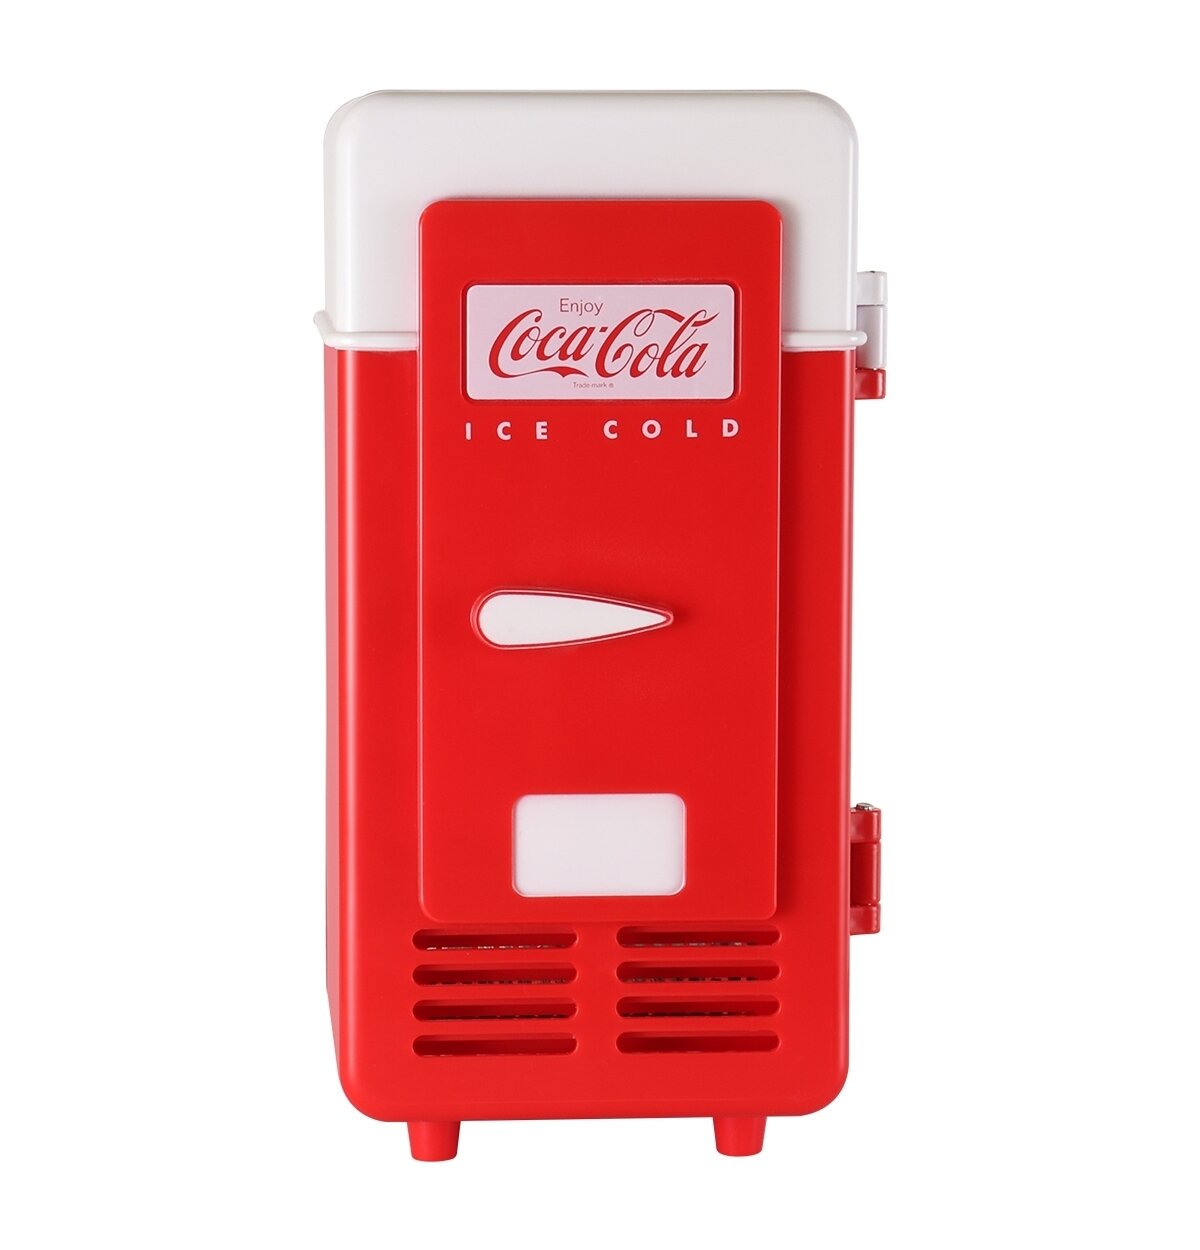 https://assets.wfcdn.com/im/27588433/compr-r85/1398/139801344/coca-cola-single-can-cooler-red-usb-mini-fridge-for-desk-office-dorm.jpg